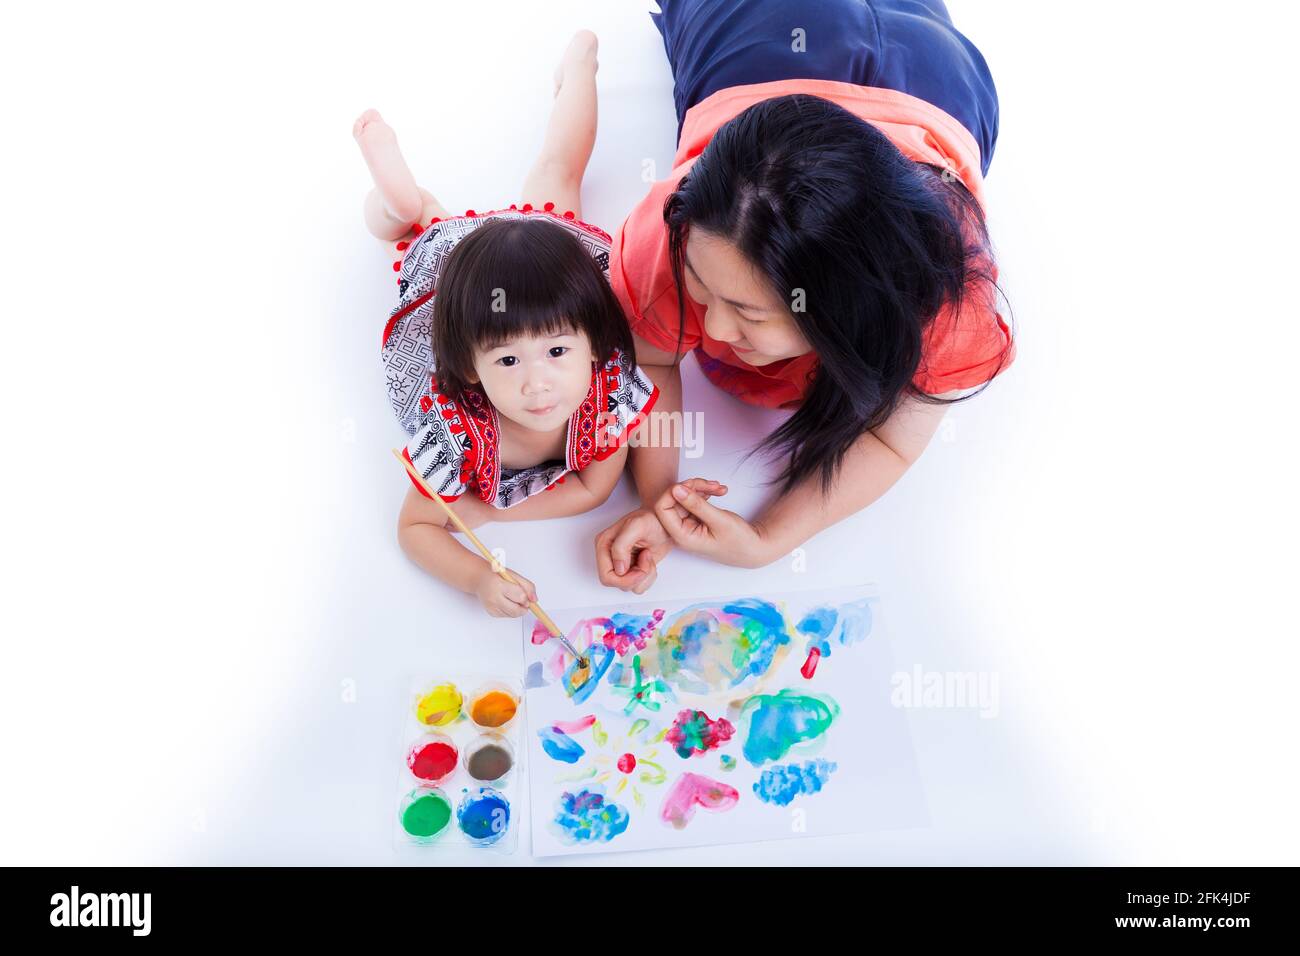 Ritratto di piccola ragazza asiatica (tailandese) pittura e utilizzando strumenti di pittura (vernici acquerello, pennello) con sua madre vicino, su sfondo bianco. C Foto Stock